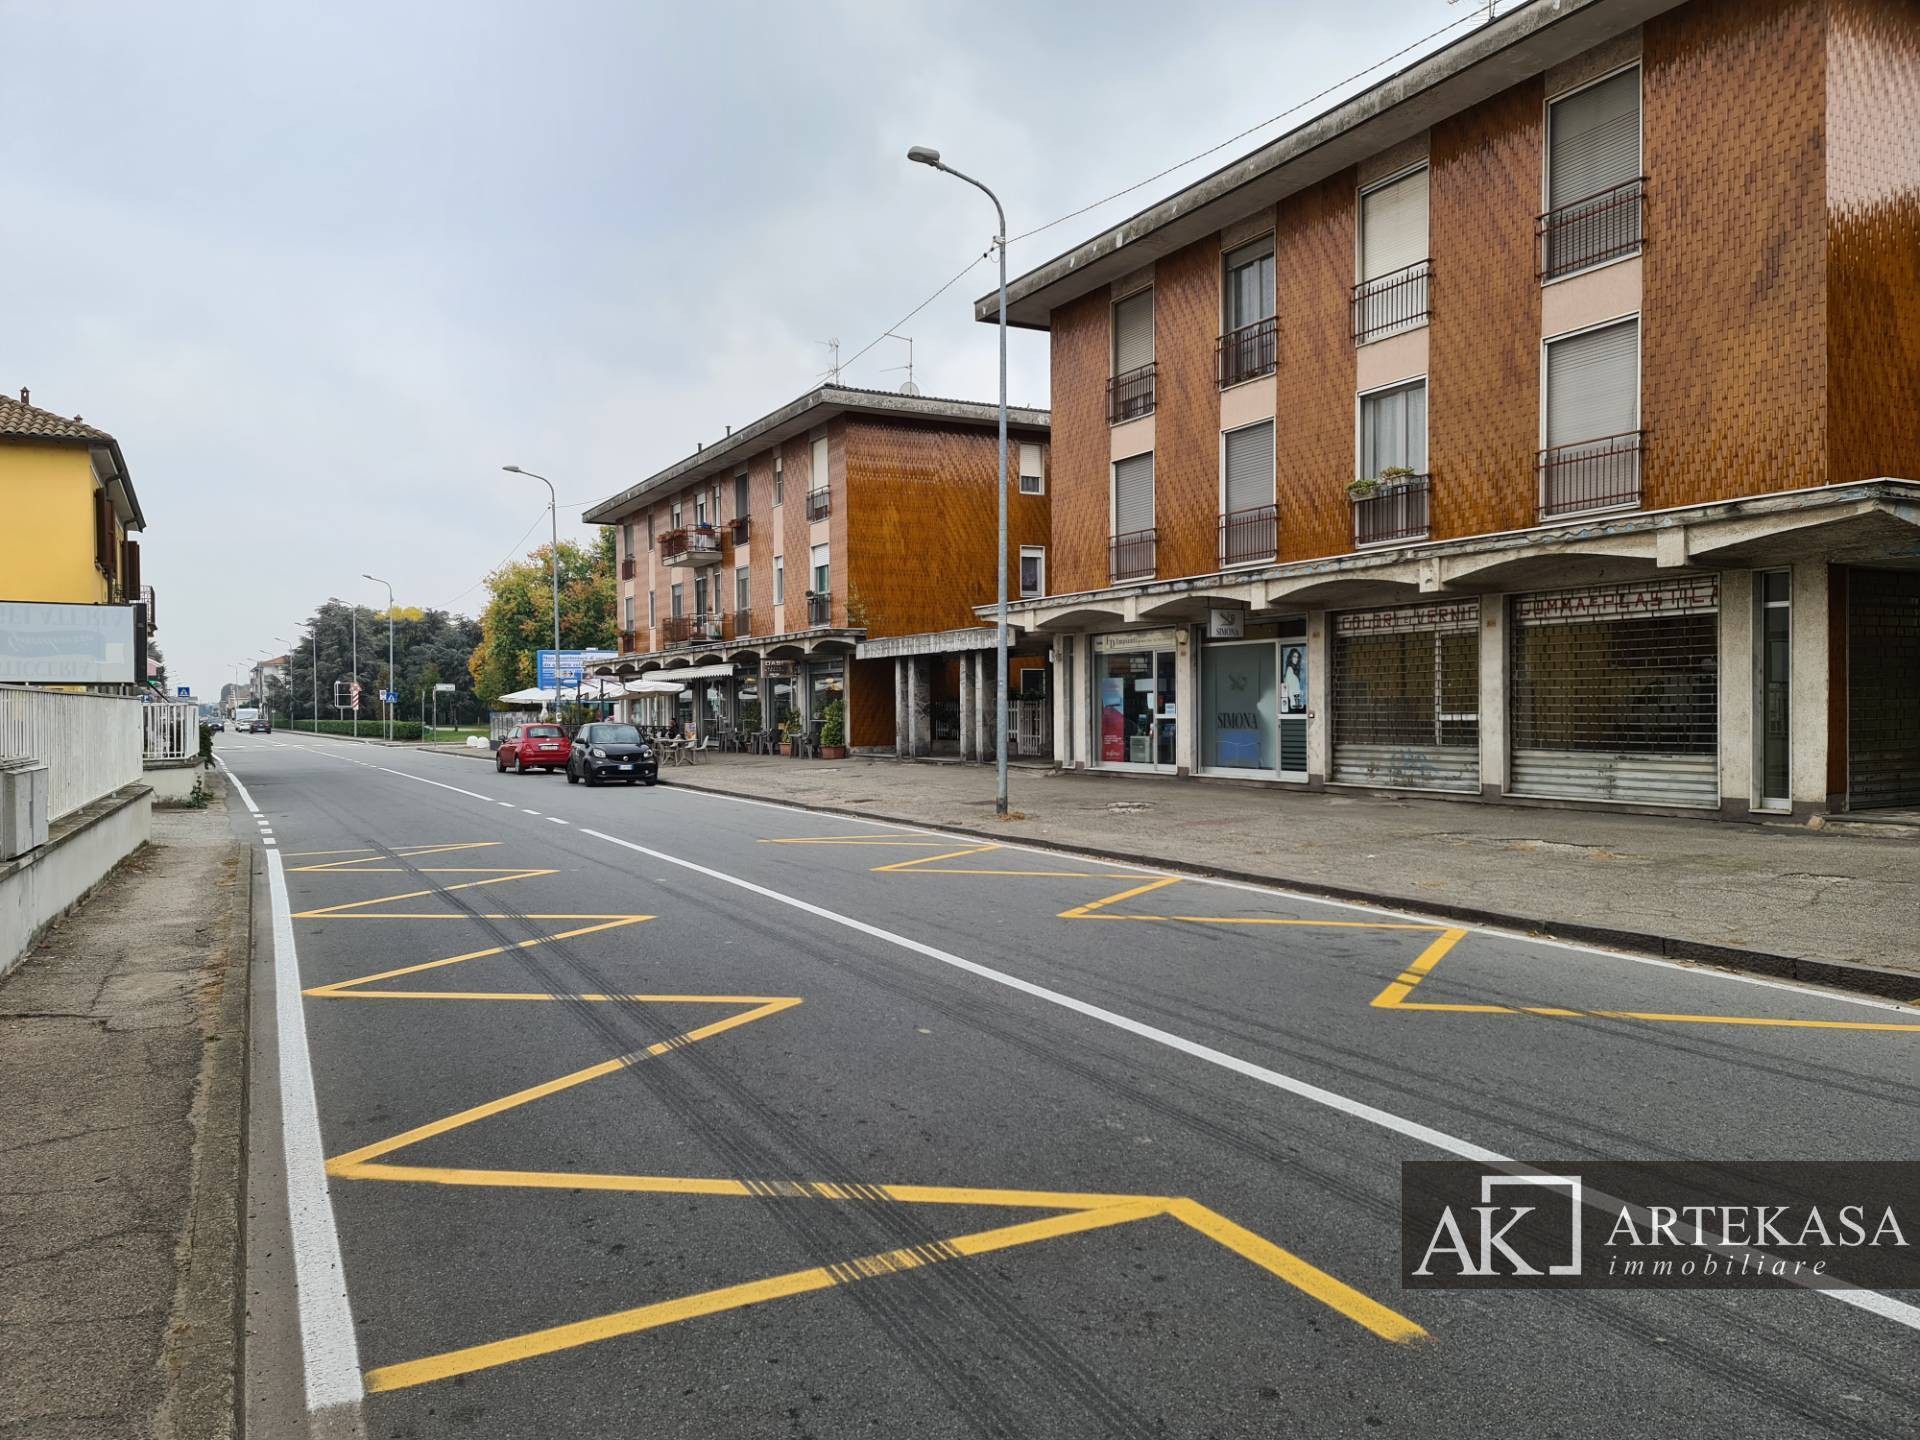 Negozio Novara - Sant'antonio - Vignale - Veveri